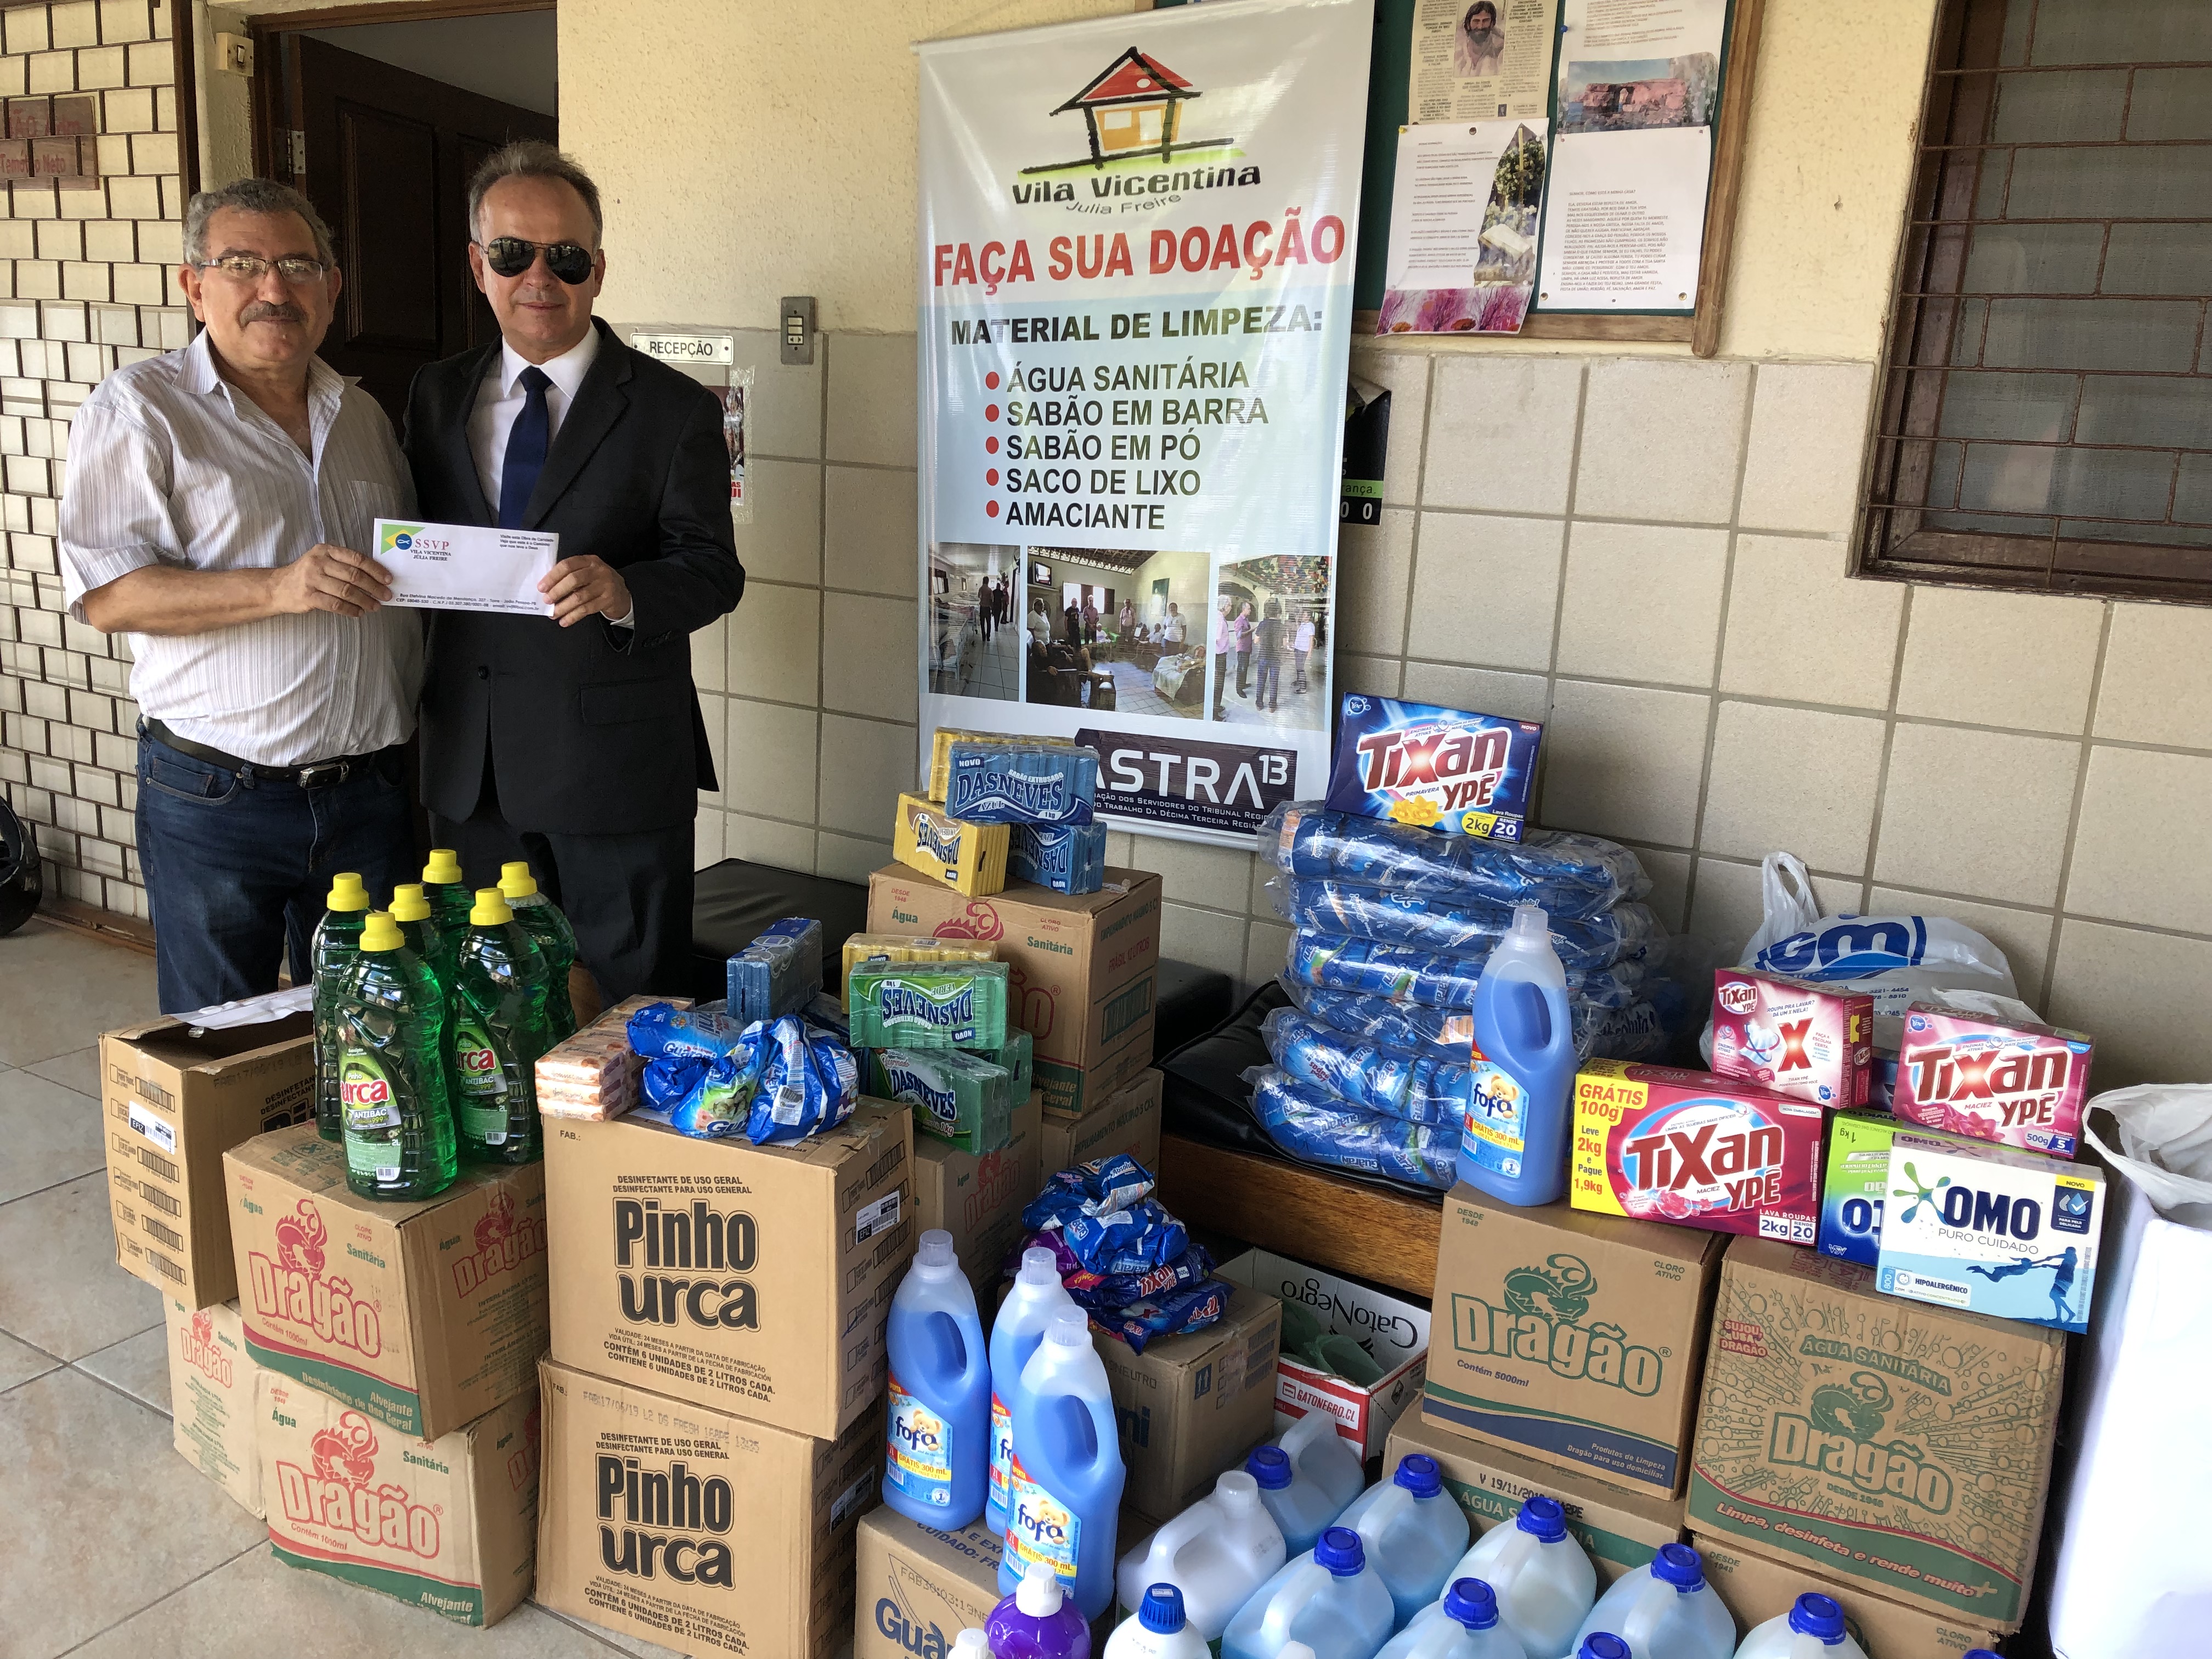 Doação de mais de 1000 itens de limpeza para a Vila Vicentina